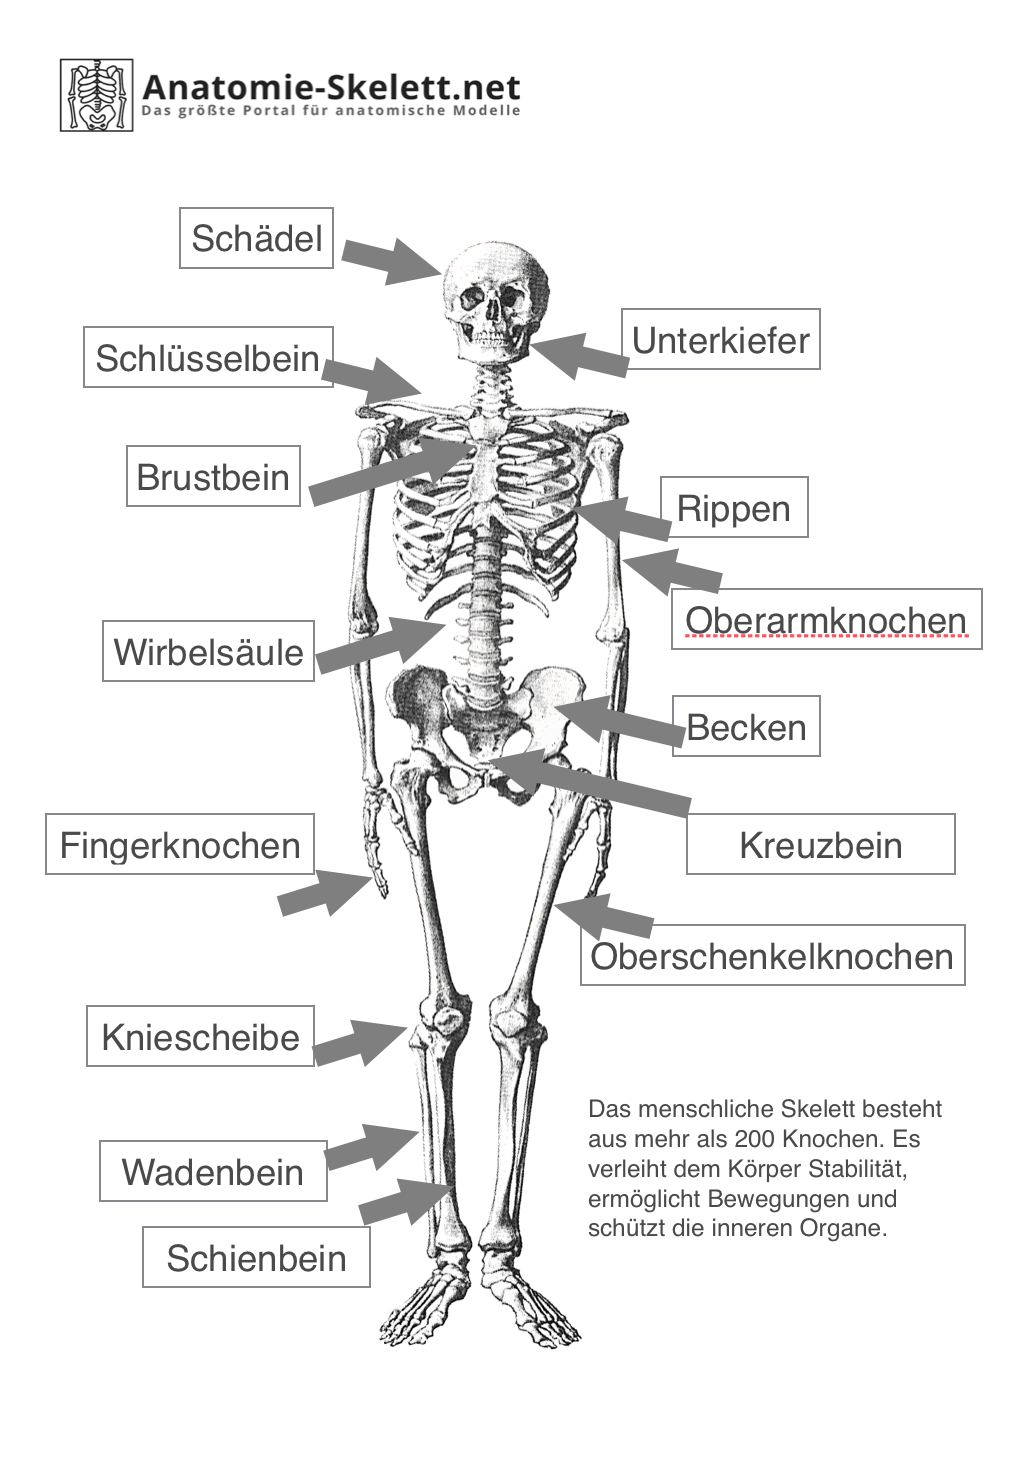 skelett ausdrucken  kinderbilderdownload  kinderbilder